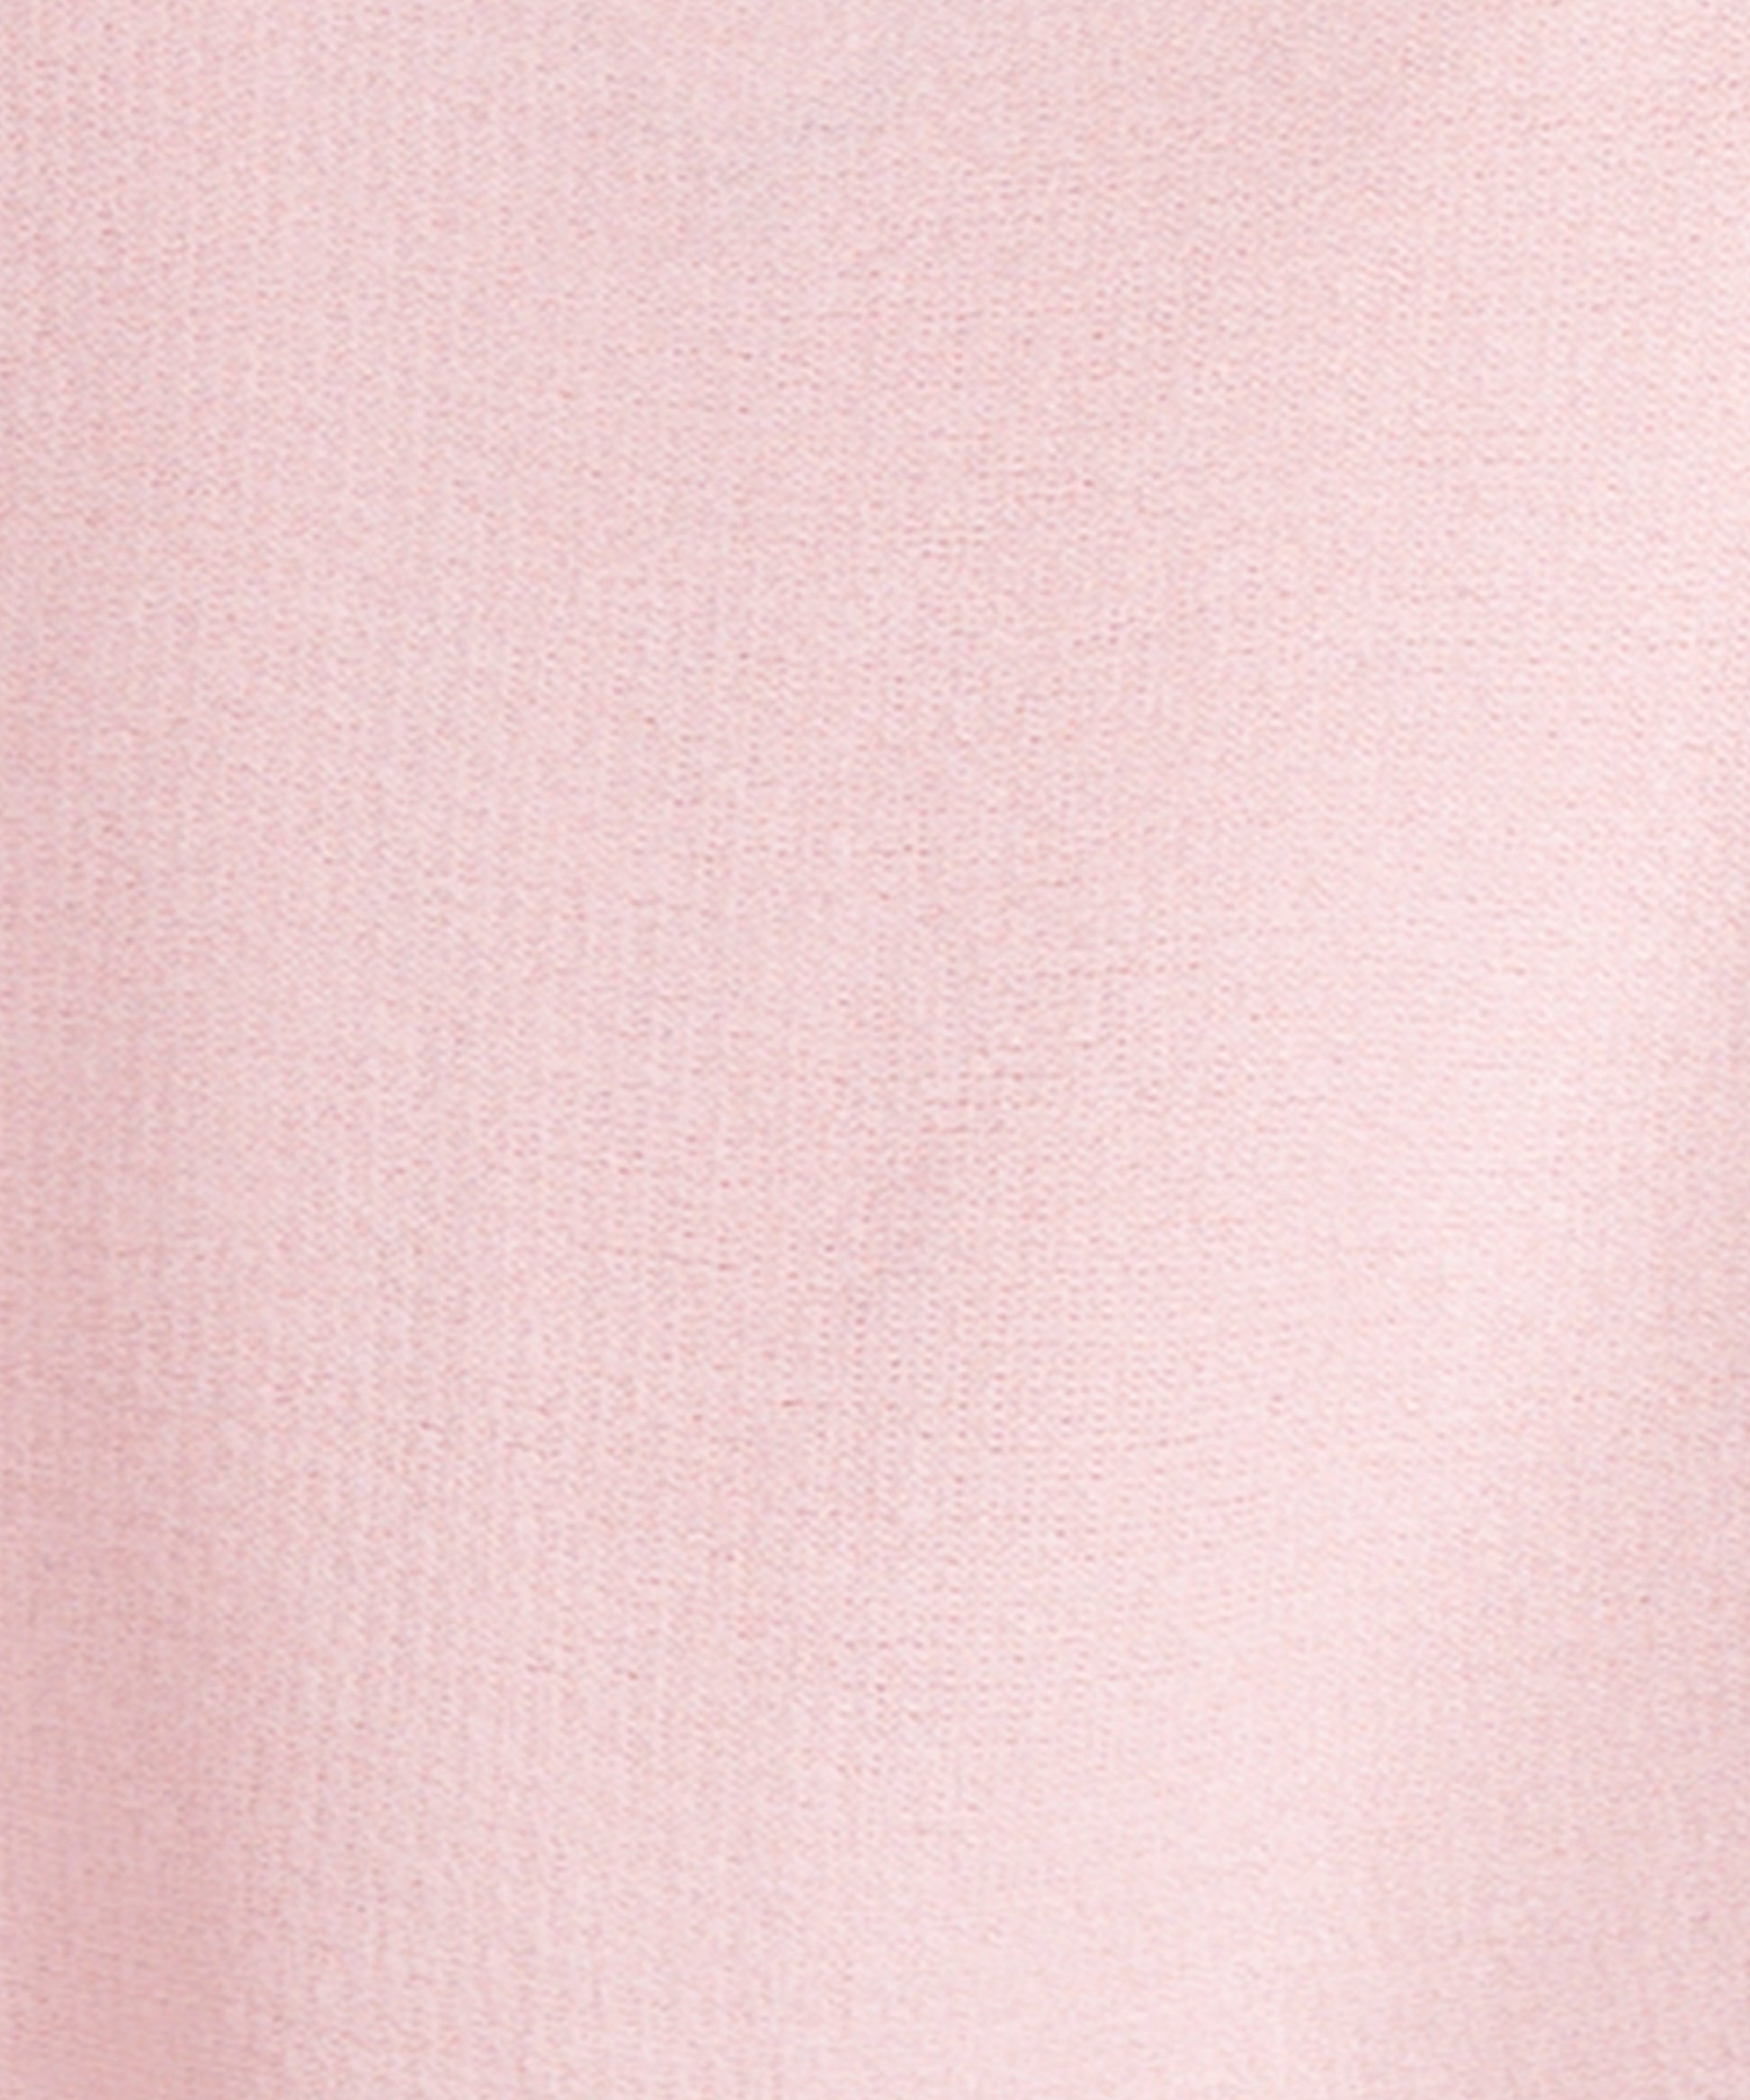 Swatch:Jaipur Pink